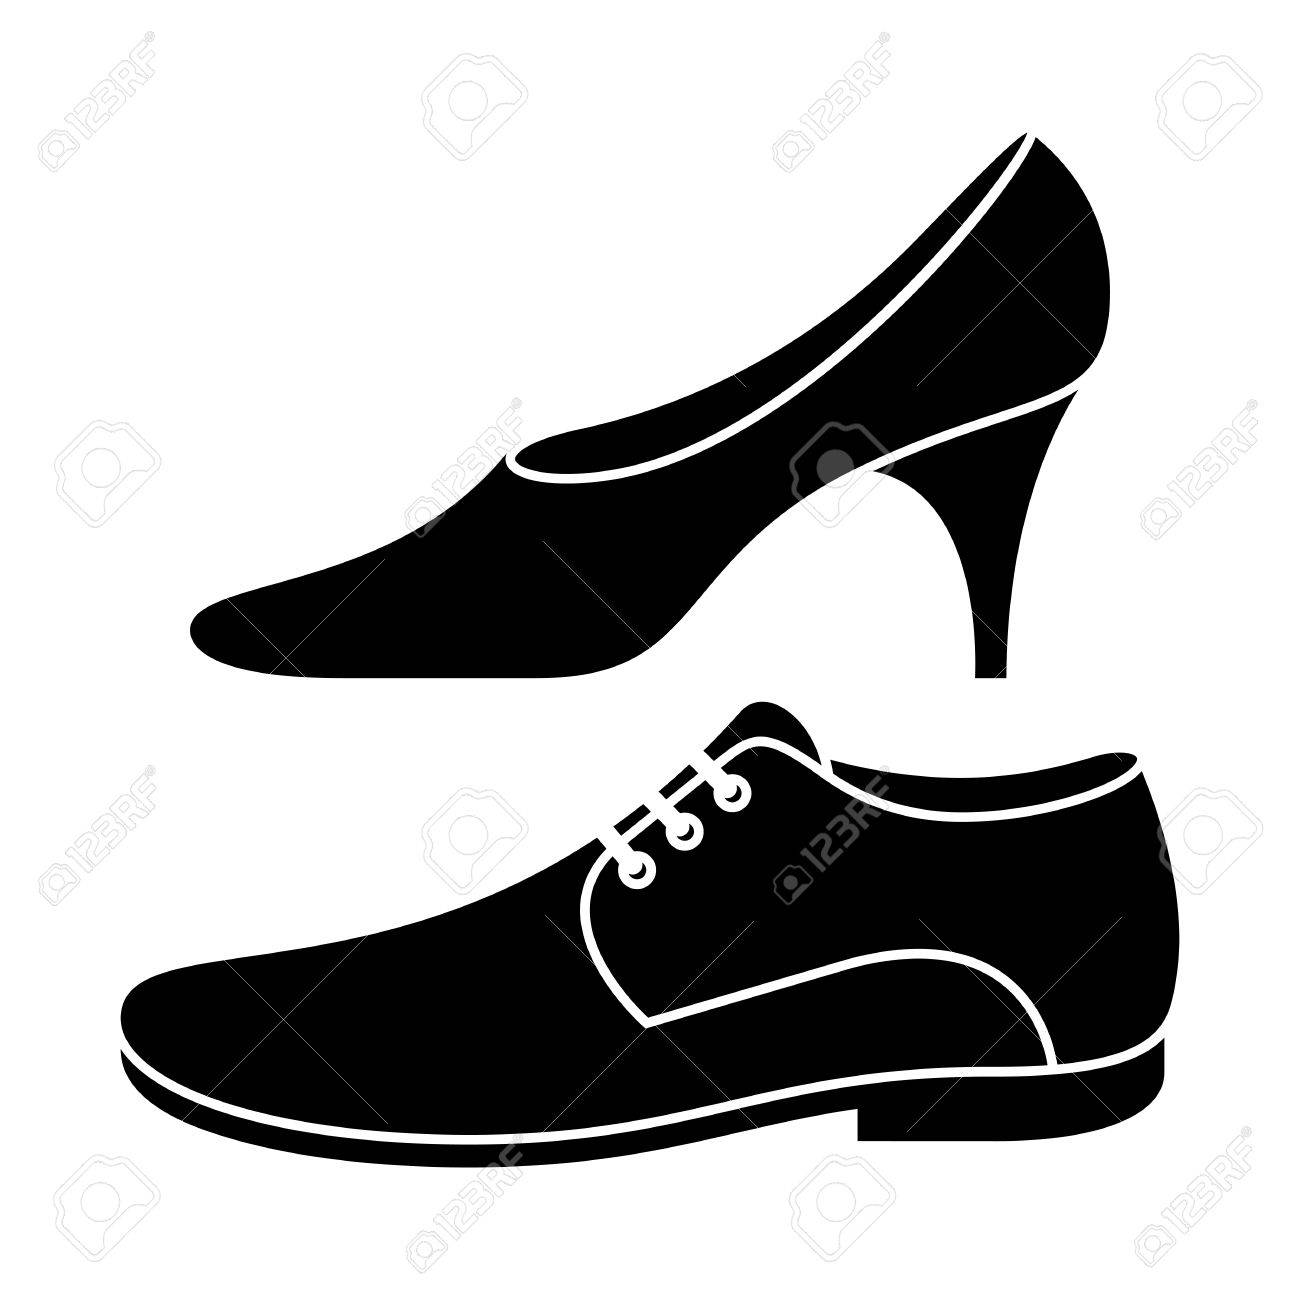 Women shoes - csp3045580